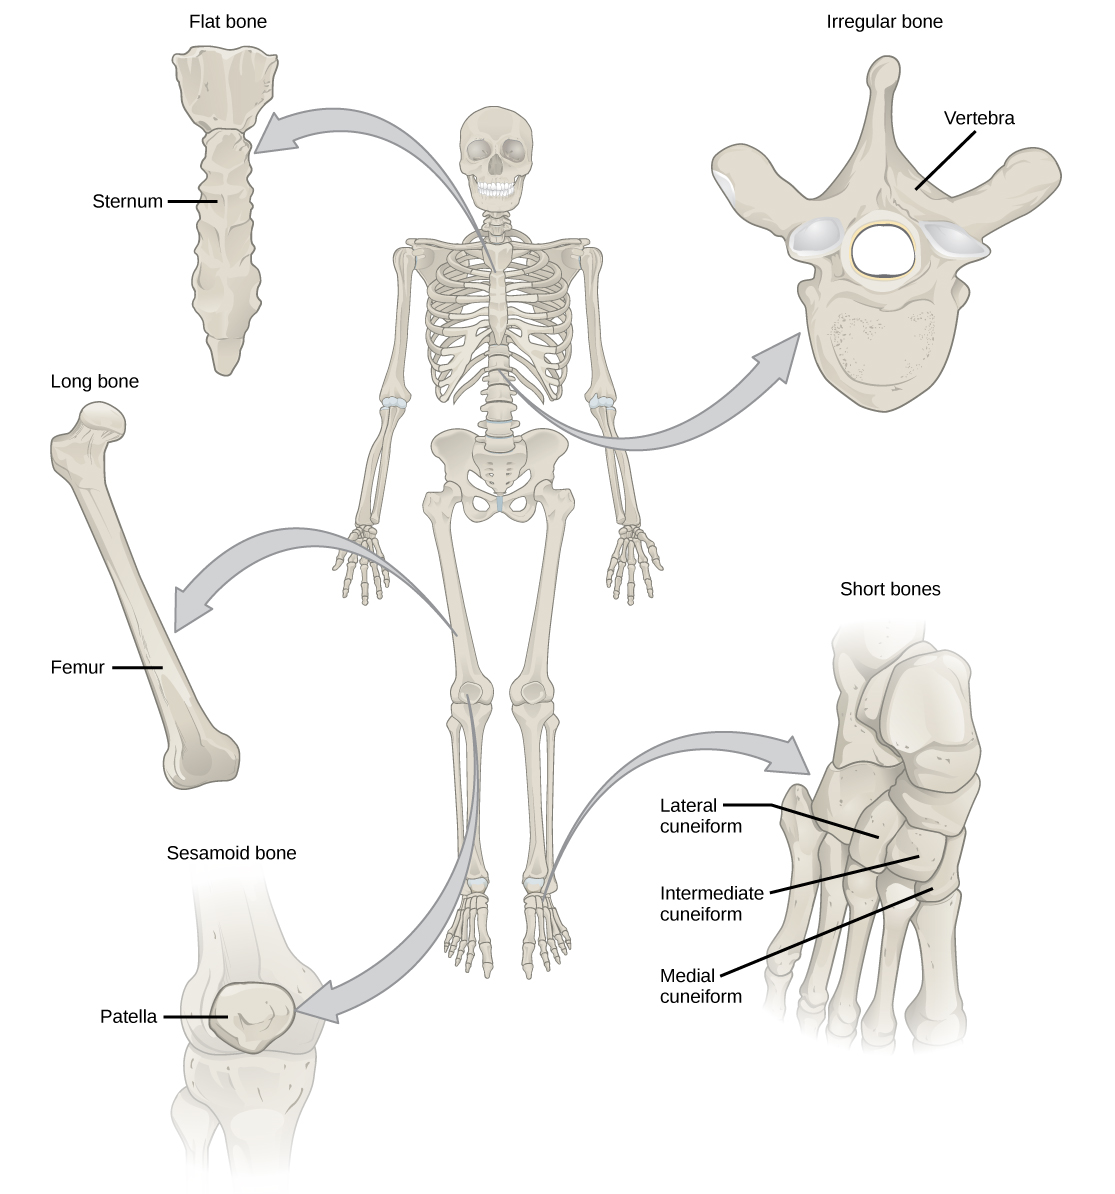 يوضح الرسم التوضيحي تصنيف أنواع العظام المختلفة. القص في الأمام ووسط القفص الصدري عبارة عن عظم مسطح. عظم الفخذ هو عظم طويل. الرضفة هي عظم سمسويد. الفقرات عبارة عن عظام غير منتظمة، وعظام القدم عبارة عن عظام قصيرة.